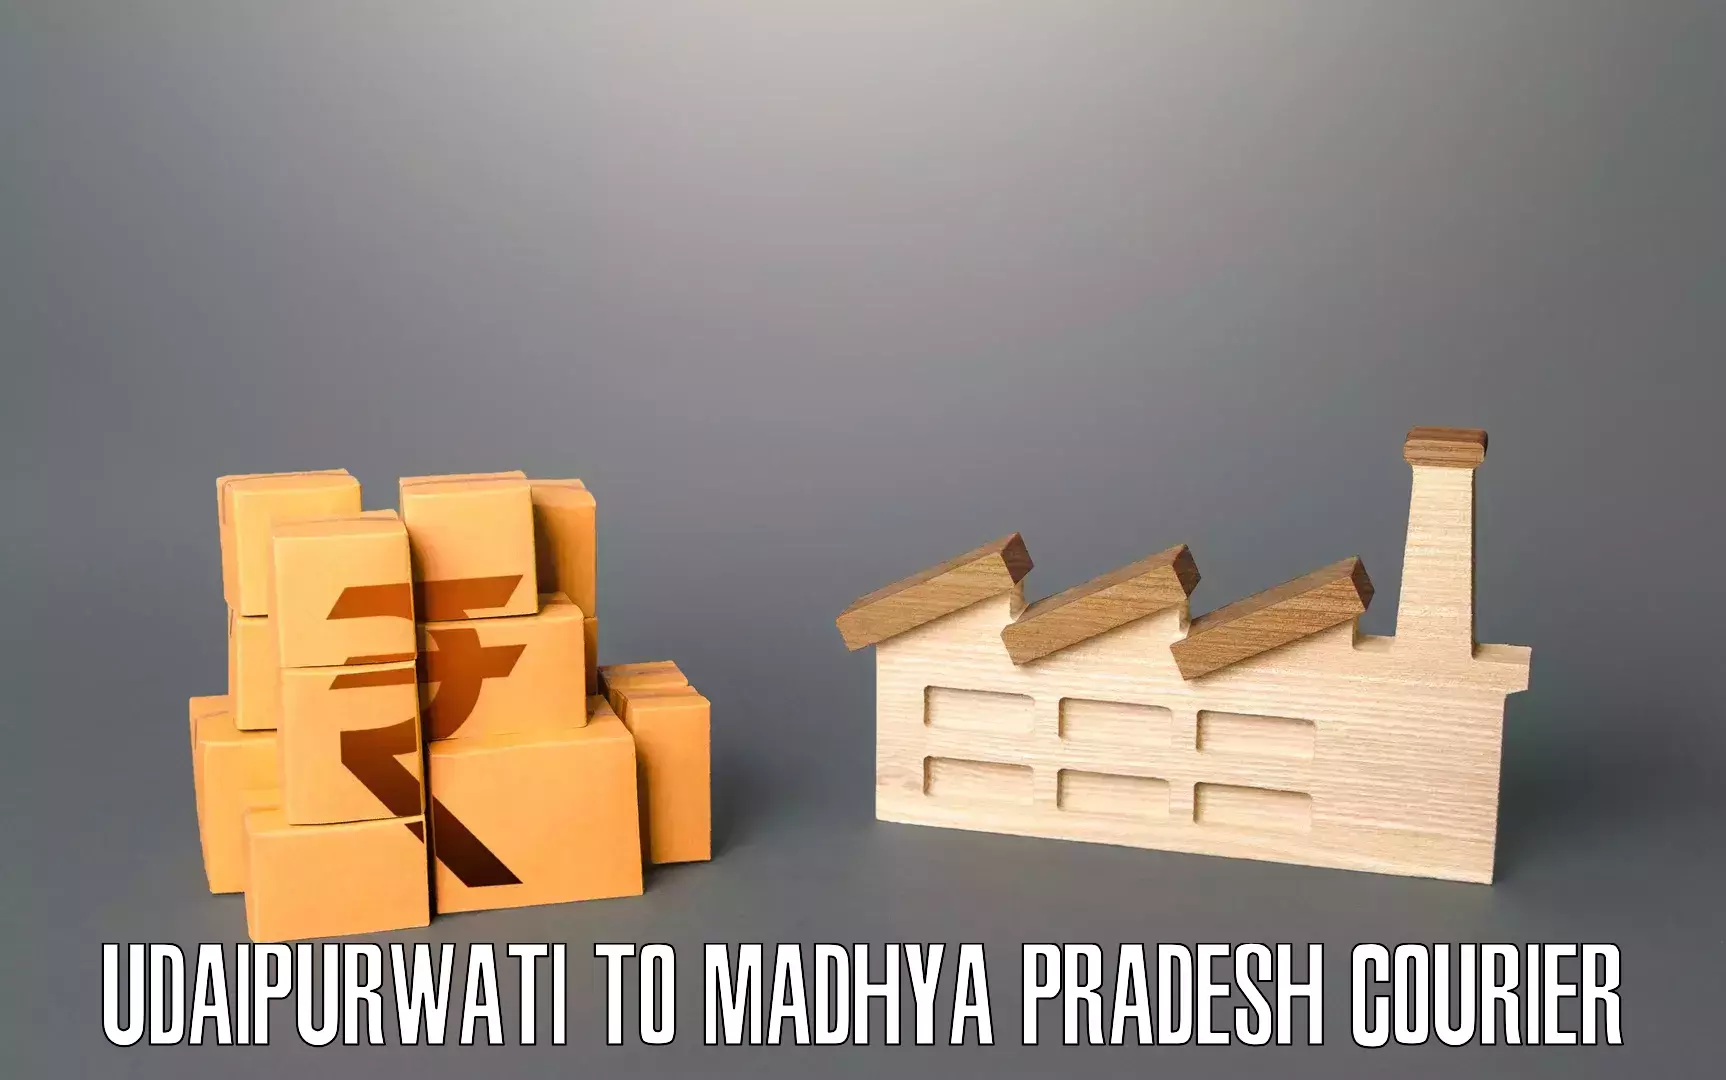 Efficient moving services Udaipurwati to Dindori